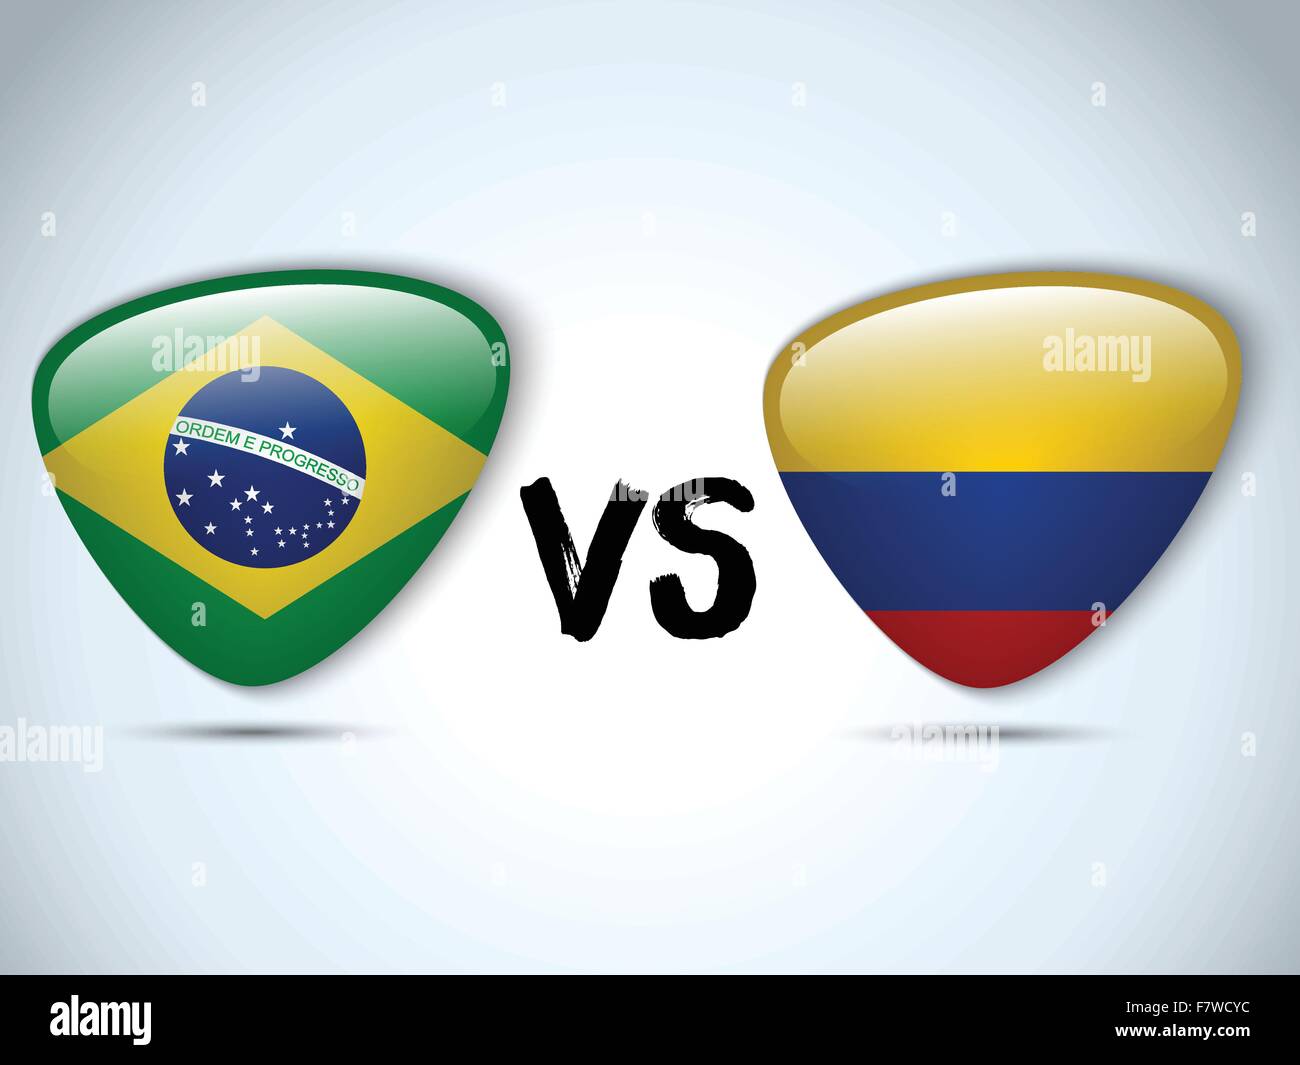 Vs colombia brazil Brazil vs